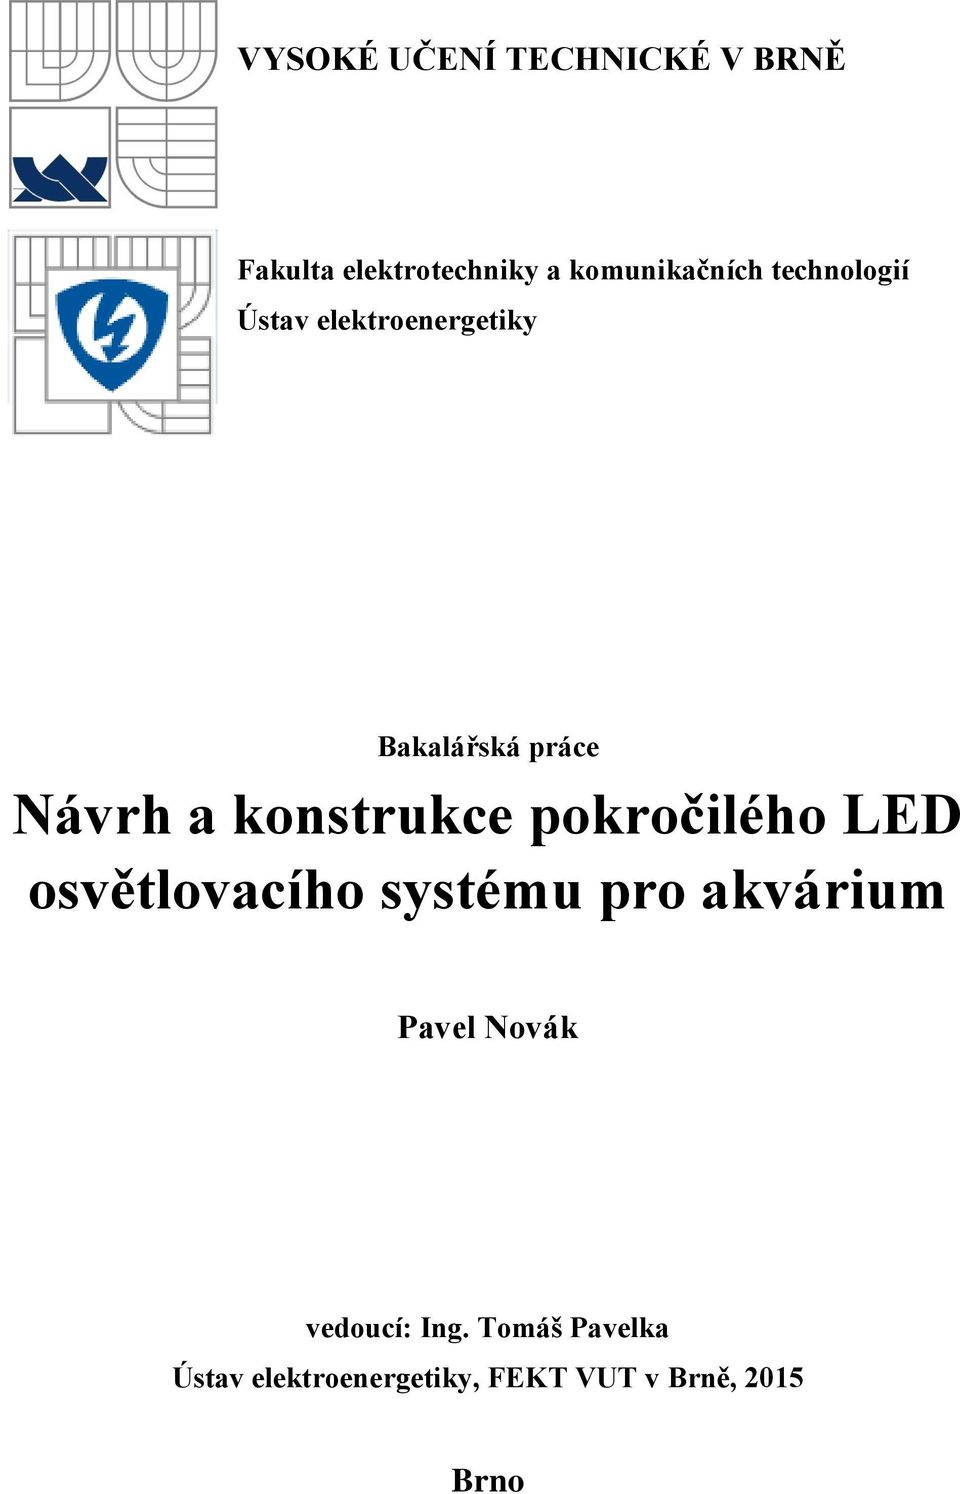 Návrh a konstrukce pokročilého LED osvětlovacího systému pro